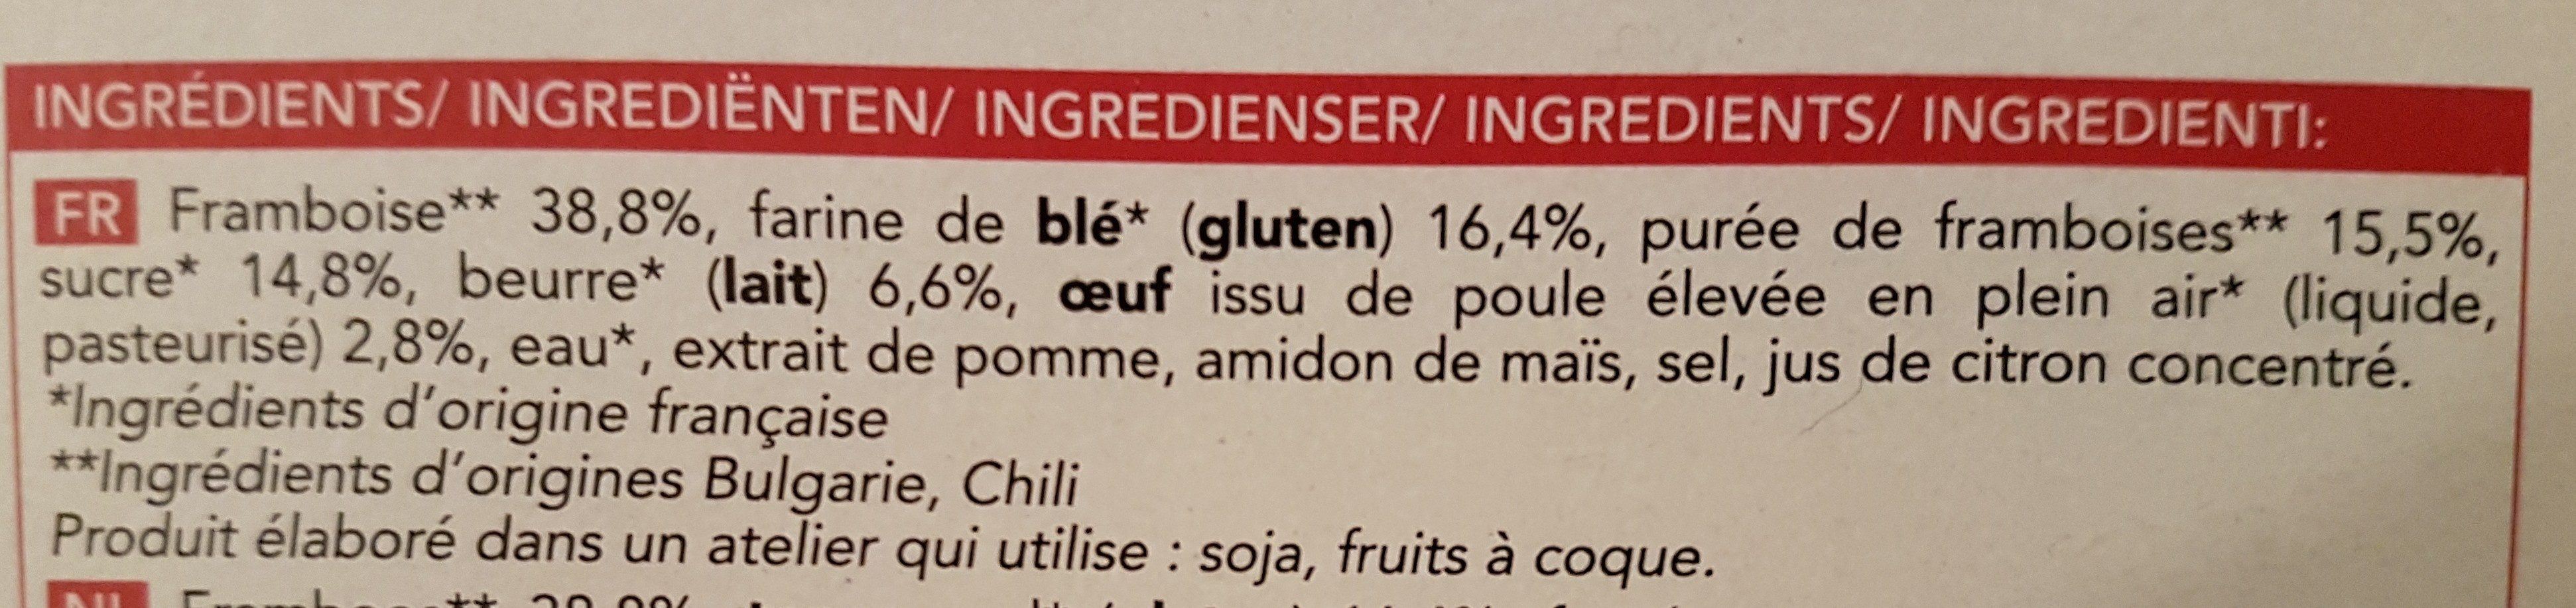 Tarte aux framboises - Ingrediënten - fr